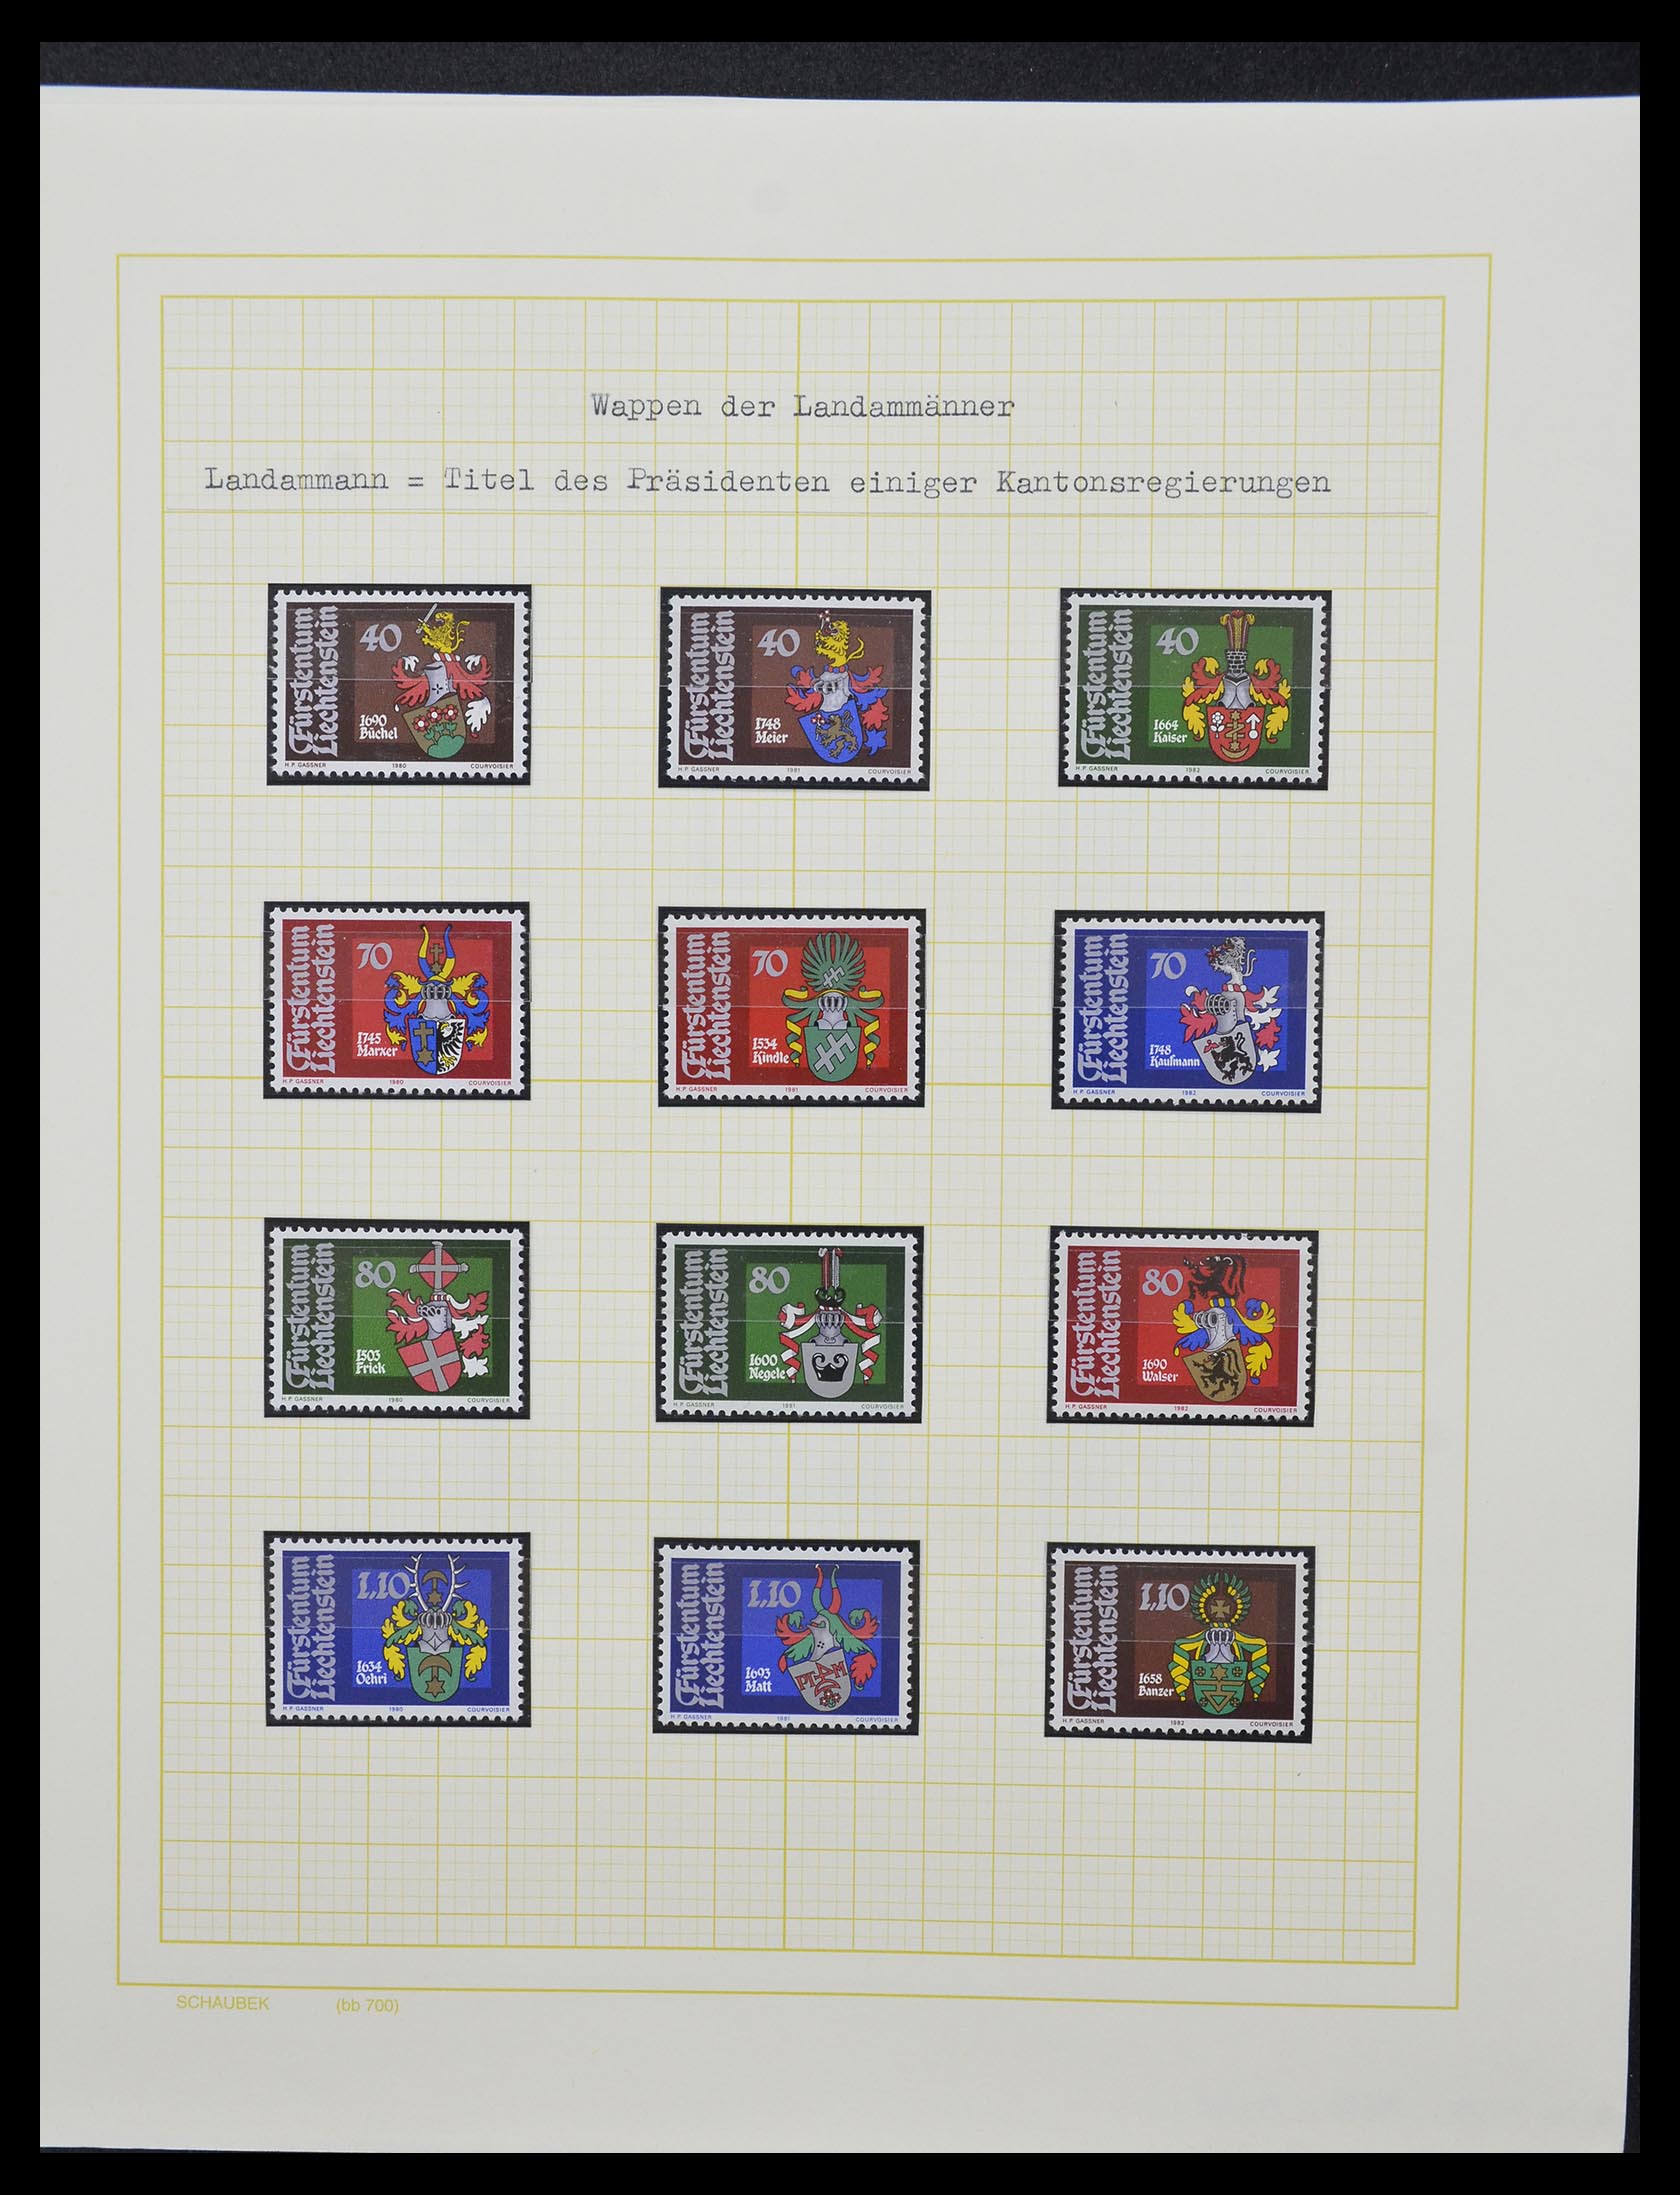 33138 029 - Stamp collection 33138 Liechtenstein 1912-2002.